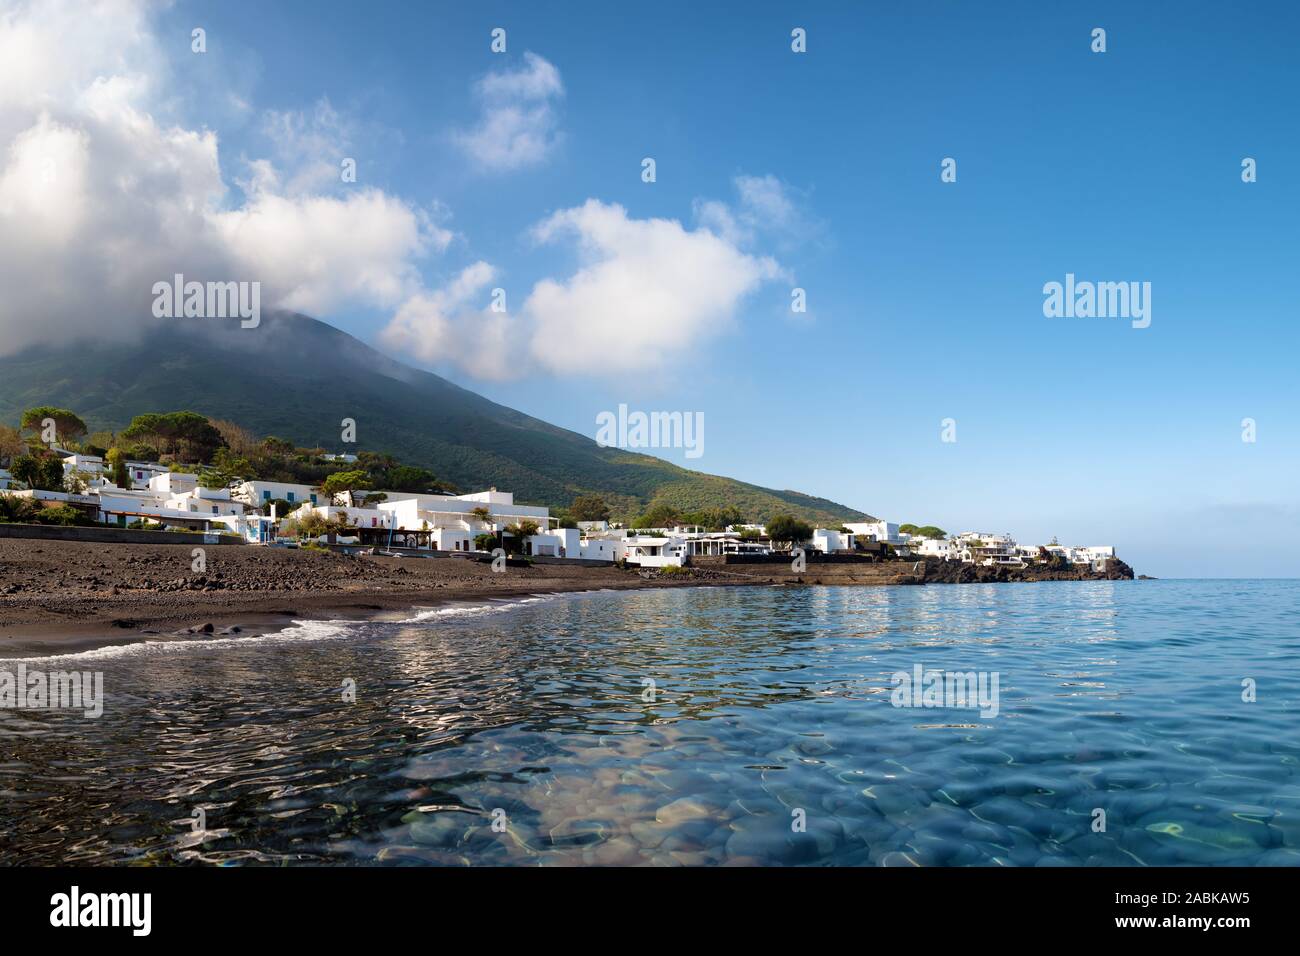 Arena negra y agua clara de la 'Playa' ficogrande cerca del volcán Stromboli, las islas Eolias, Italia Foto de stock